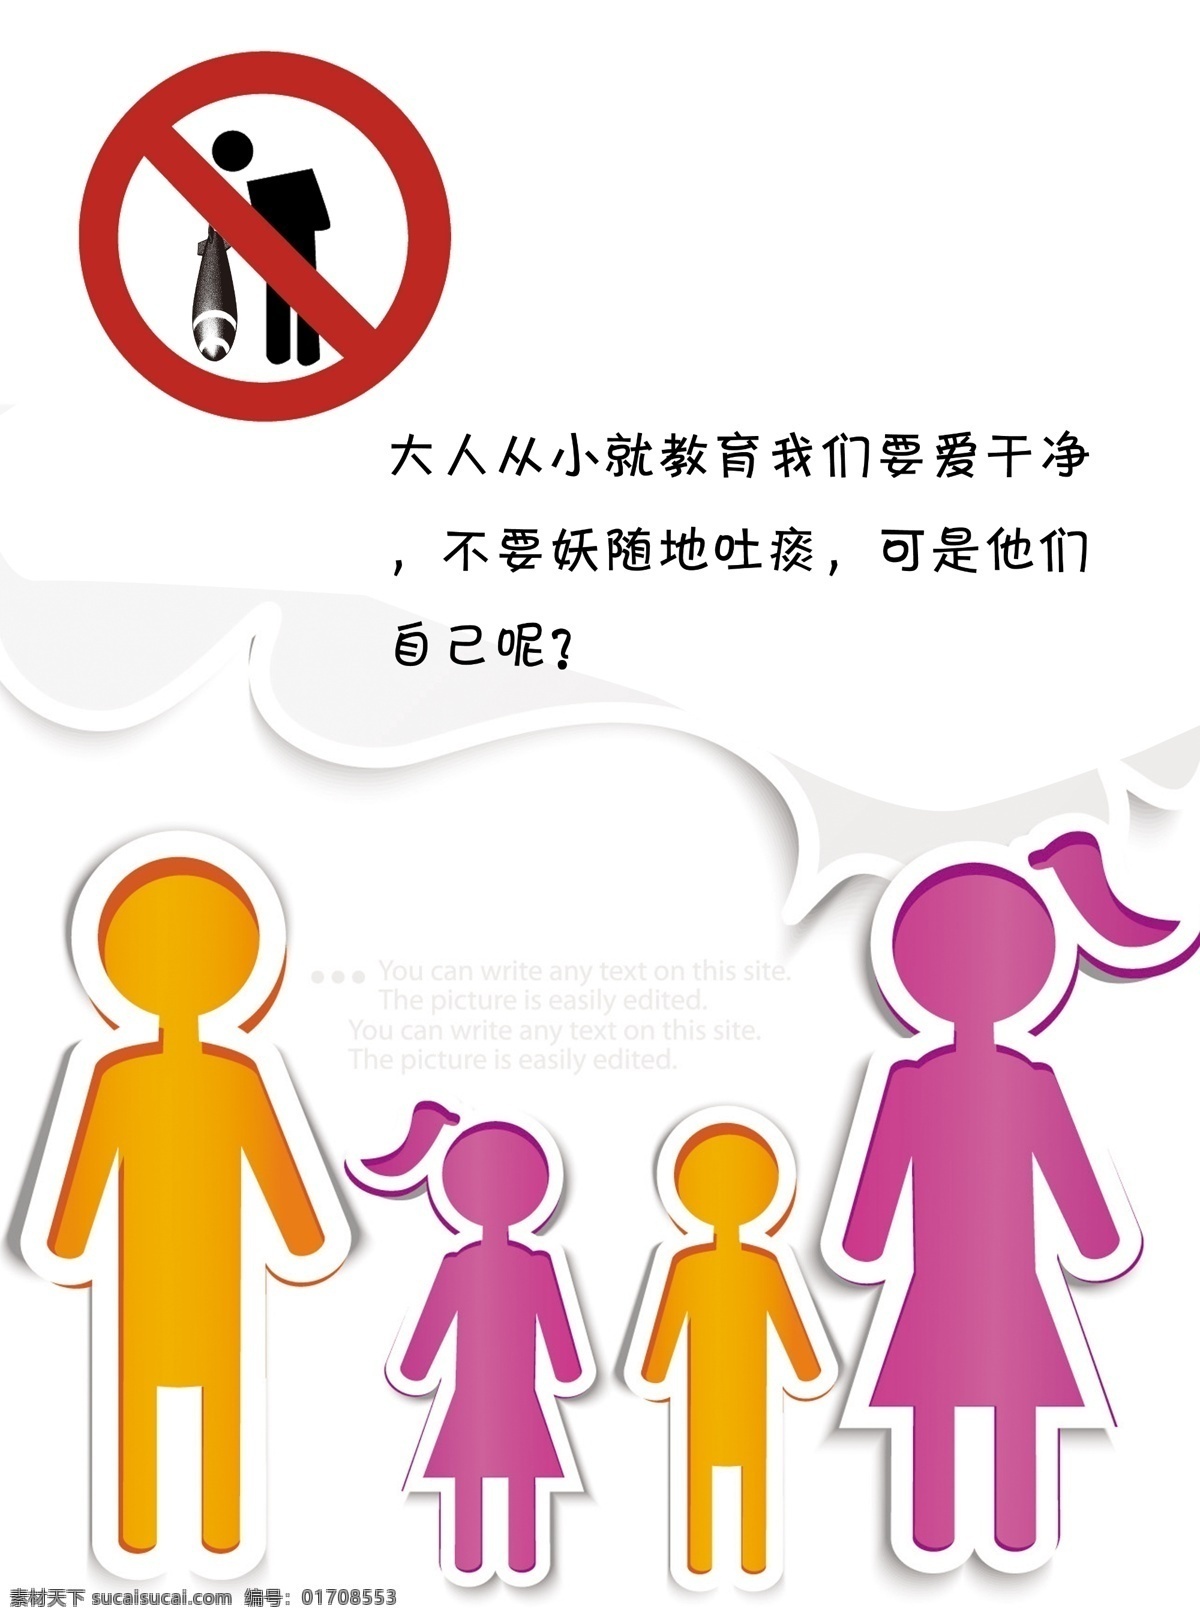 禁止 随地 吐 痰 海报 公益海报 卡通人物 色彩搭配 禁止吐痰 环保公益海报